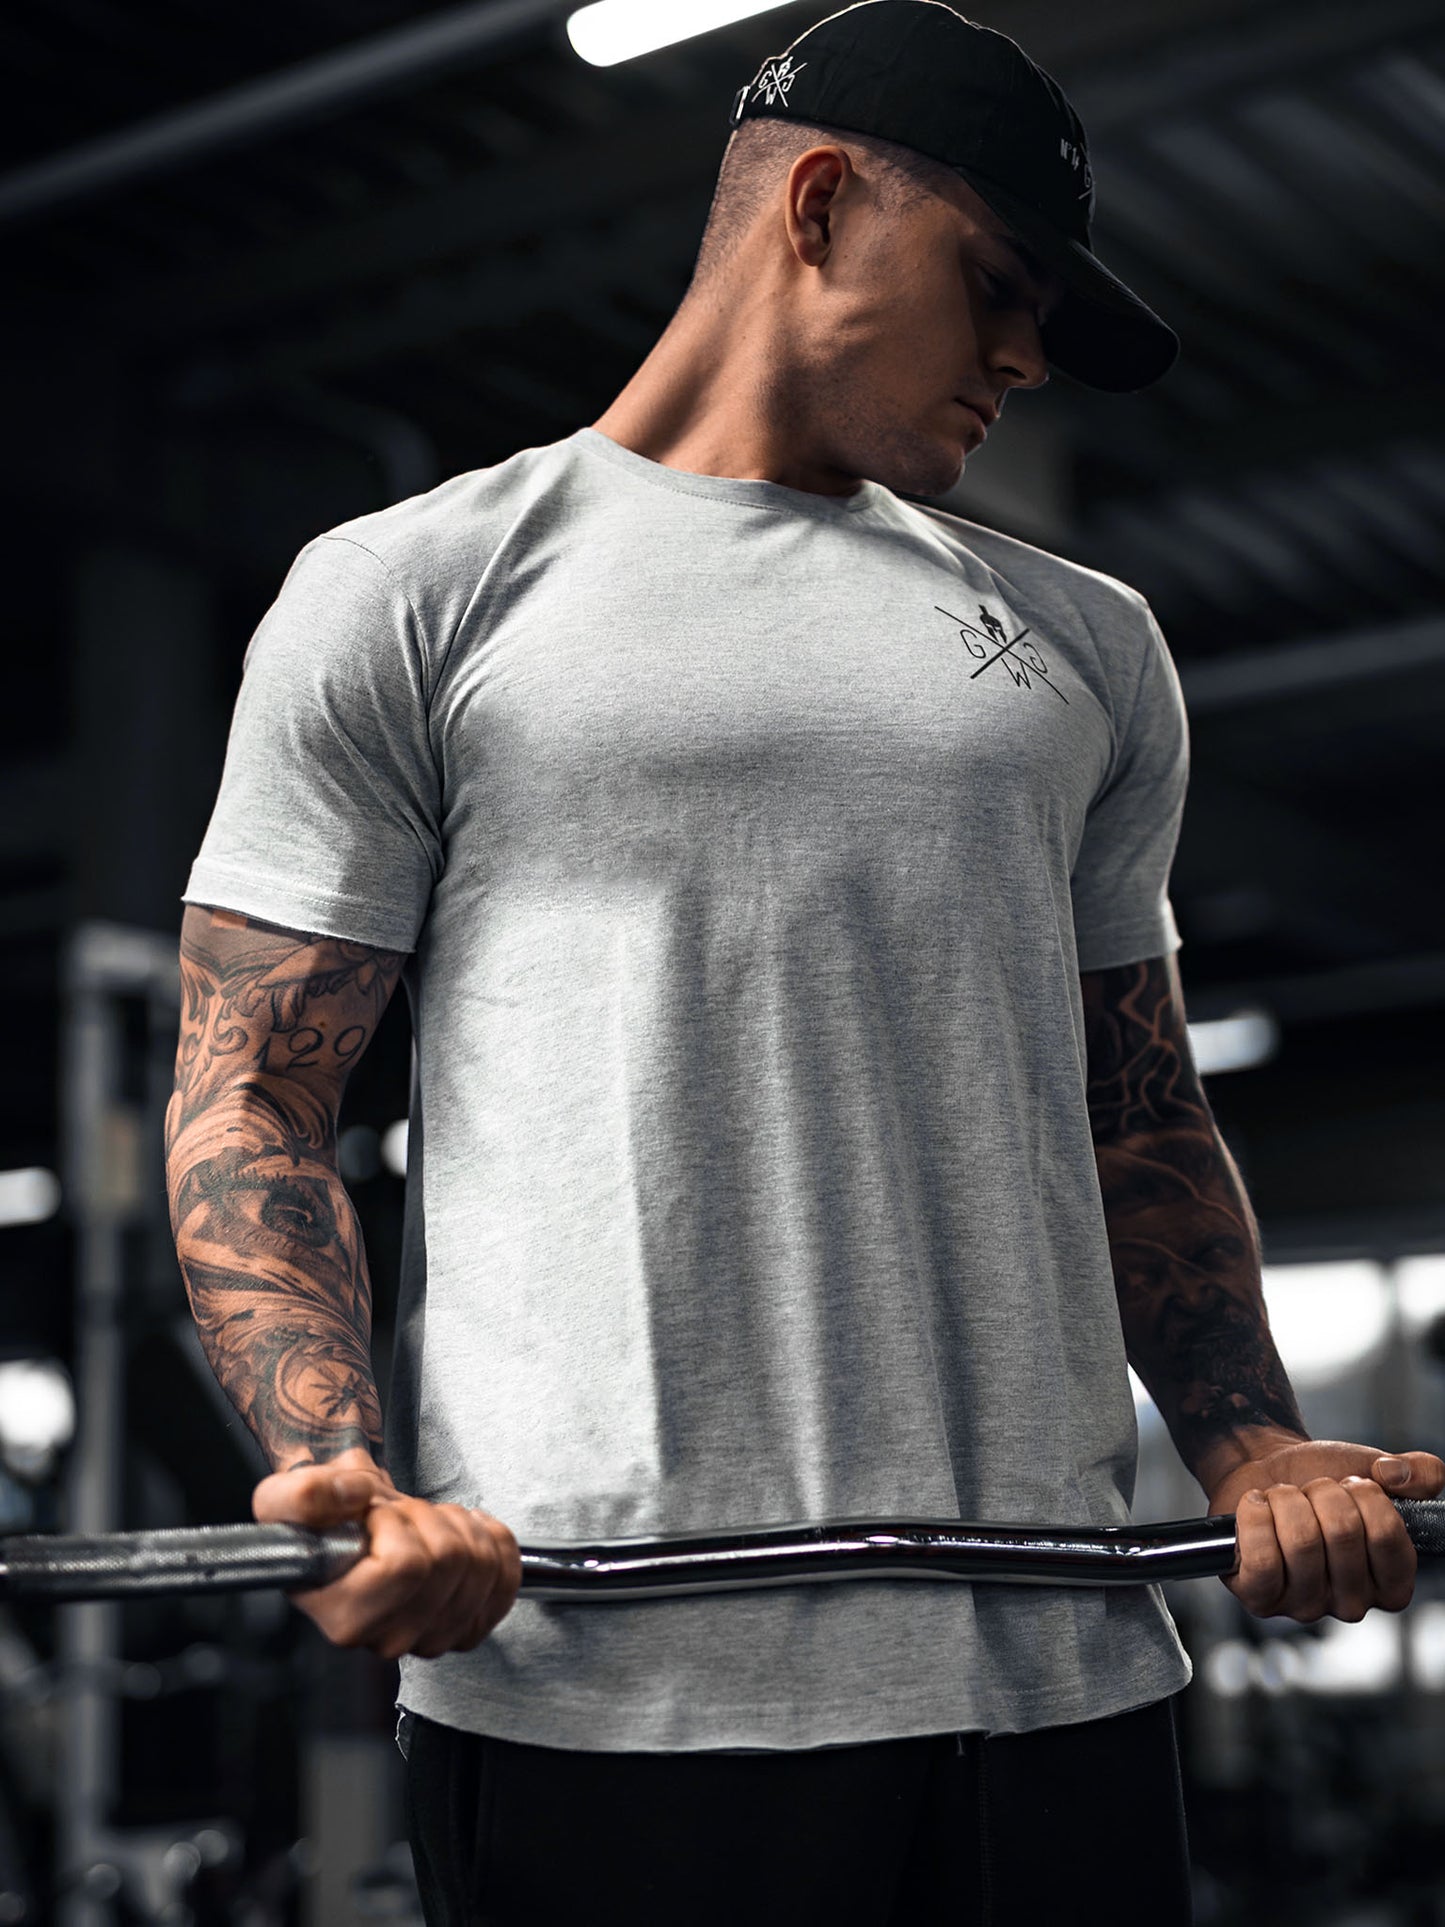 Gym Generation T-Shirt in Grau mit gerollten Ärmeln und abgerundetem Saum, perfekt für sportliche und lässige Outfits.